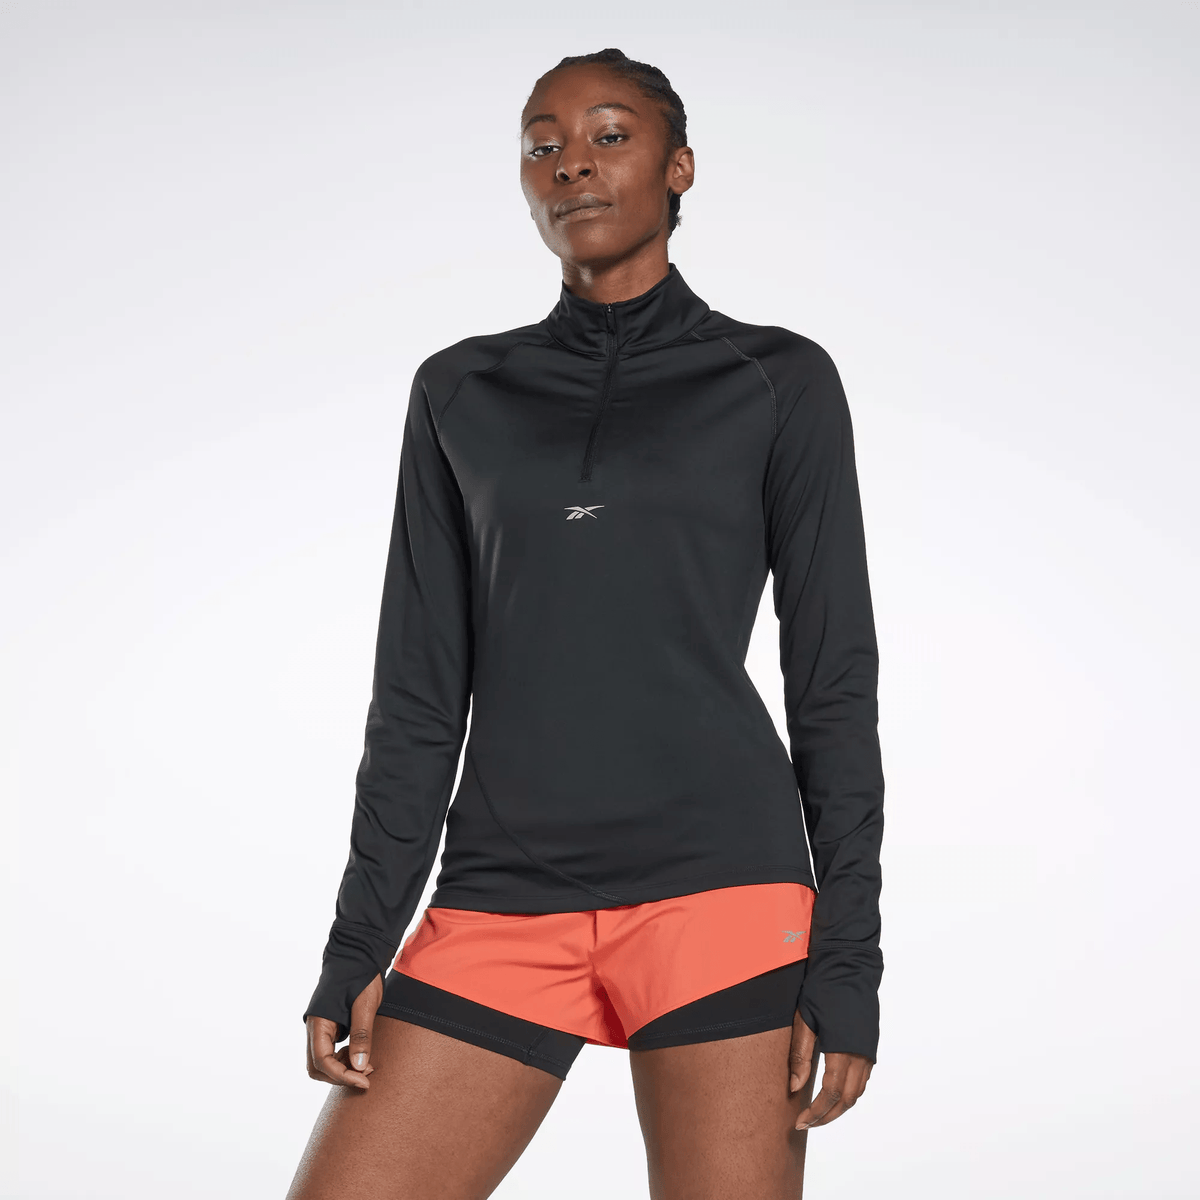 Reebok Women's Running Quarter-Zip Sweatshirt Black